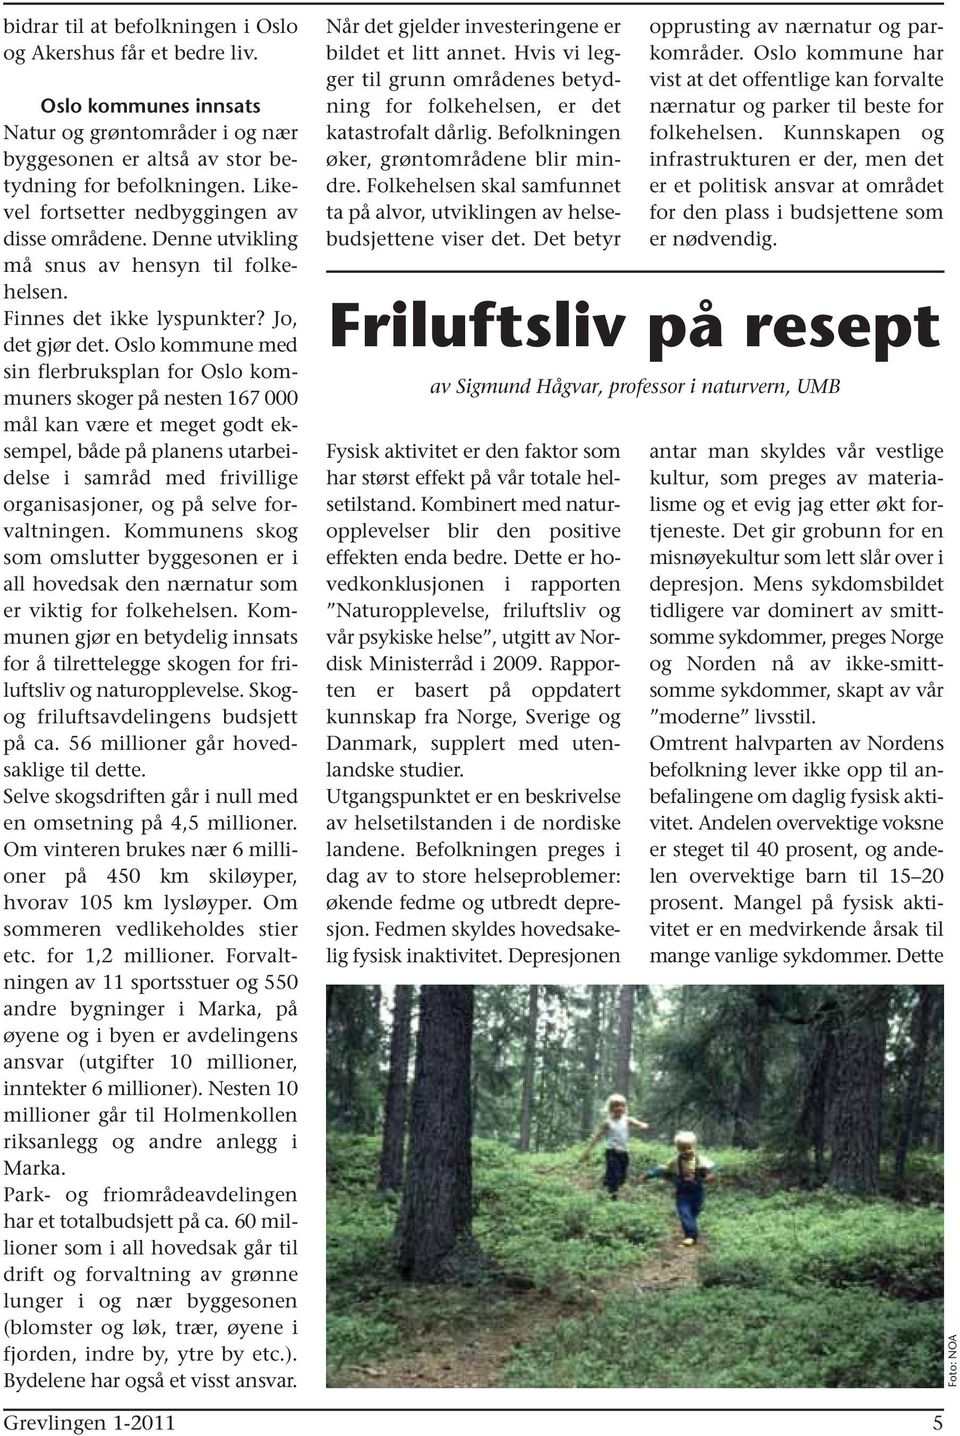 Oslo kommune med sin flerbruksplan for Oslo kommuners skoger på nesten 167 000 mål kan være et meget godt eksempel, både på planens utarbeidelse i samråd med frivillige organisasjoner, og på selve